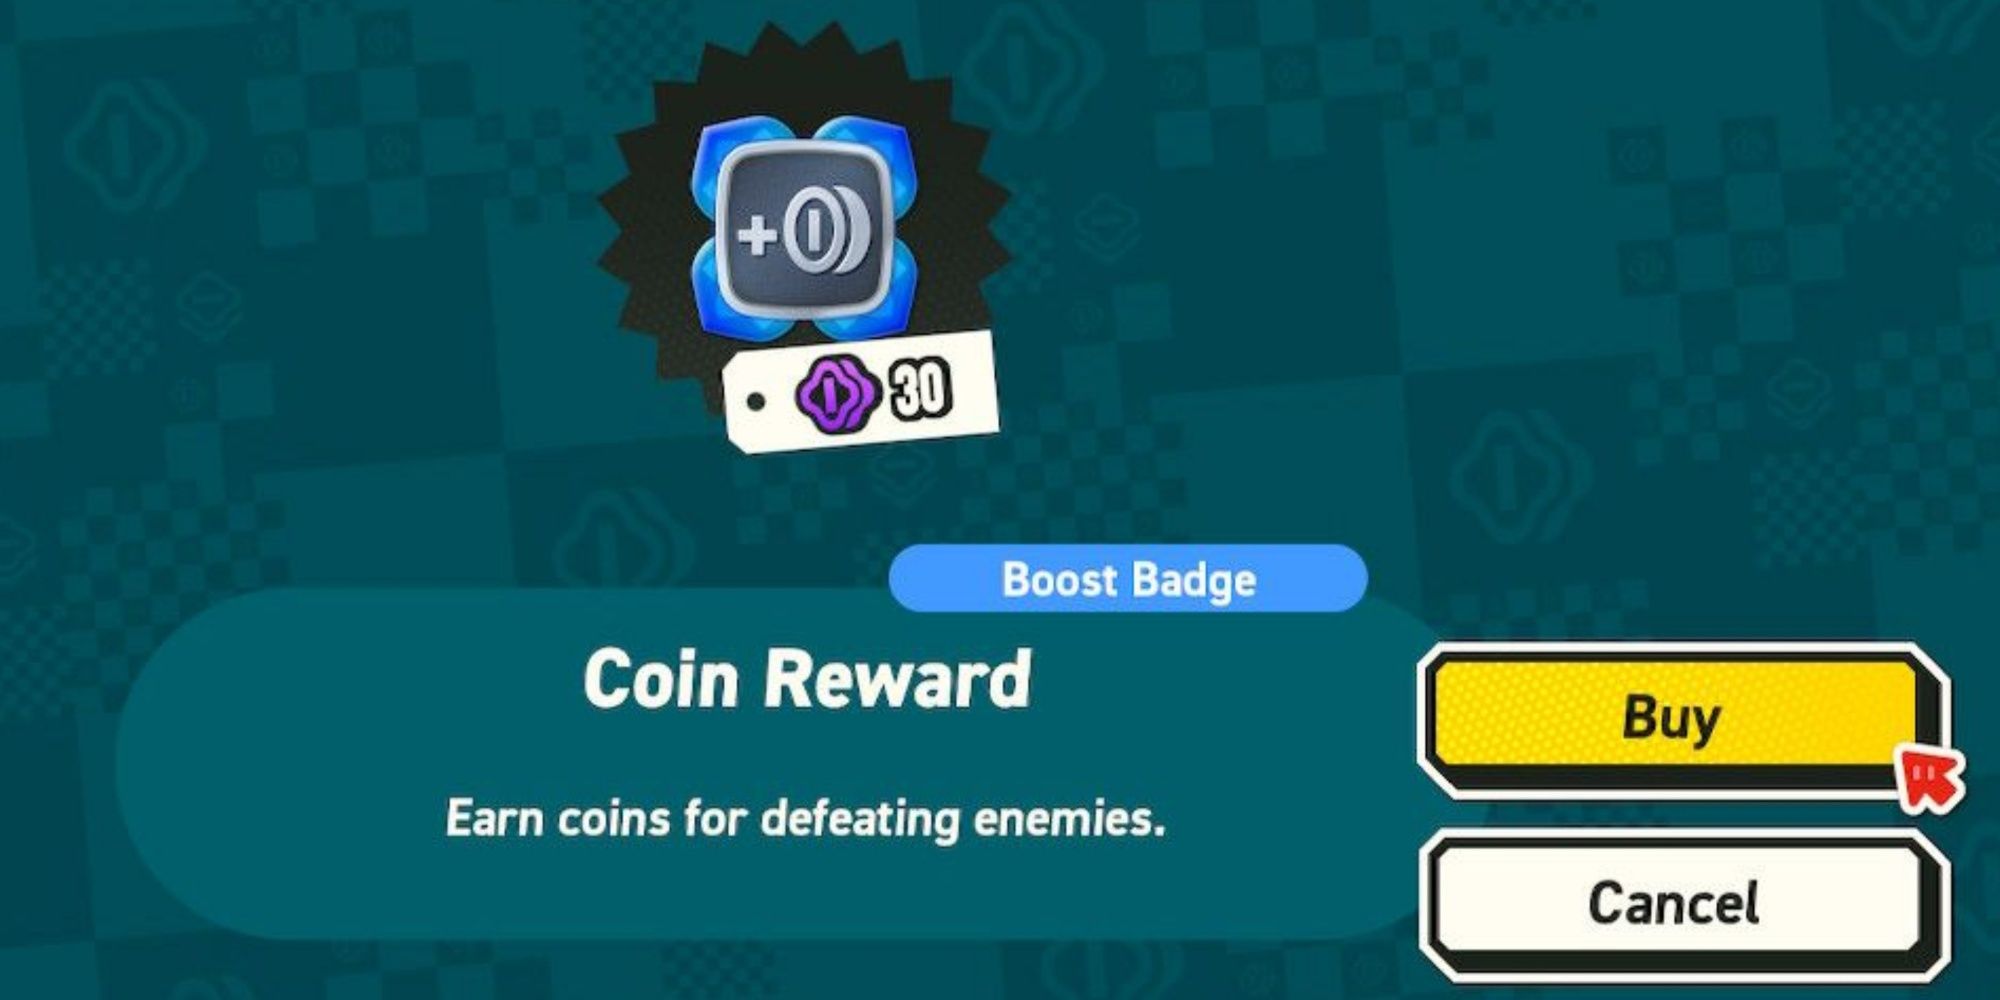 mario wonder boost badge coin reward